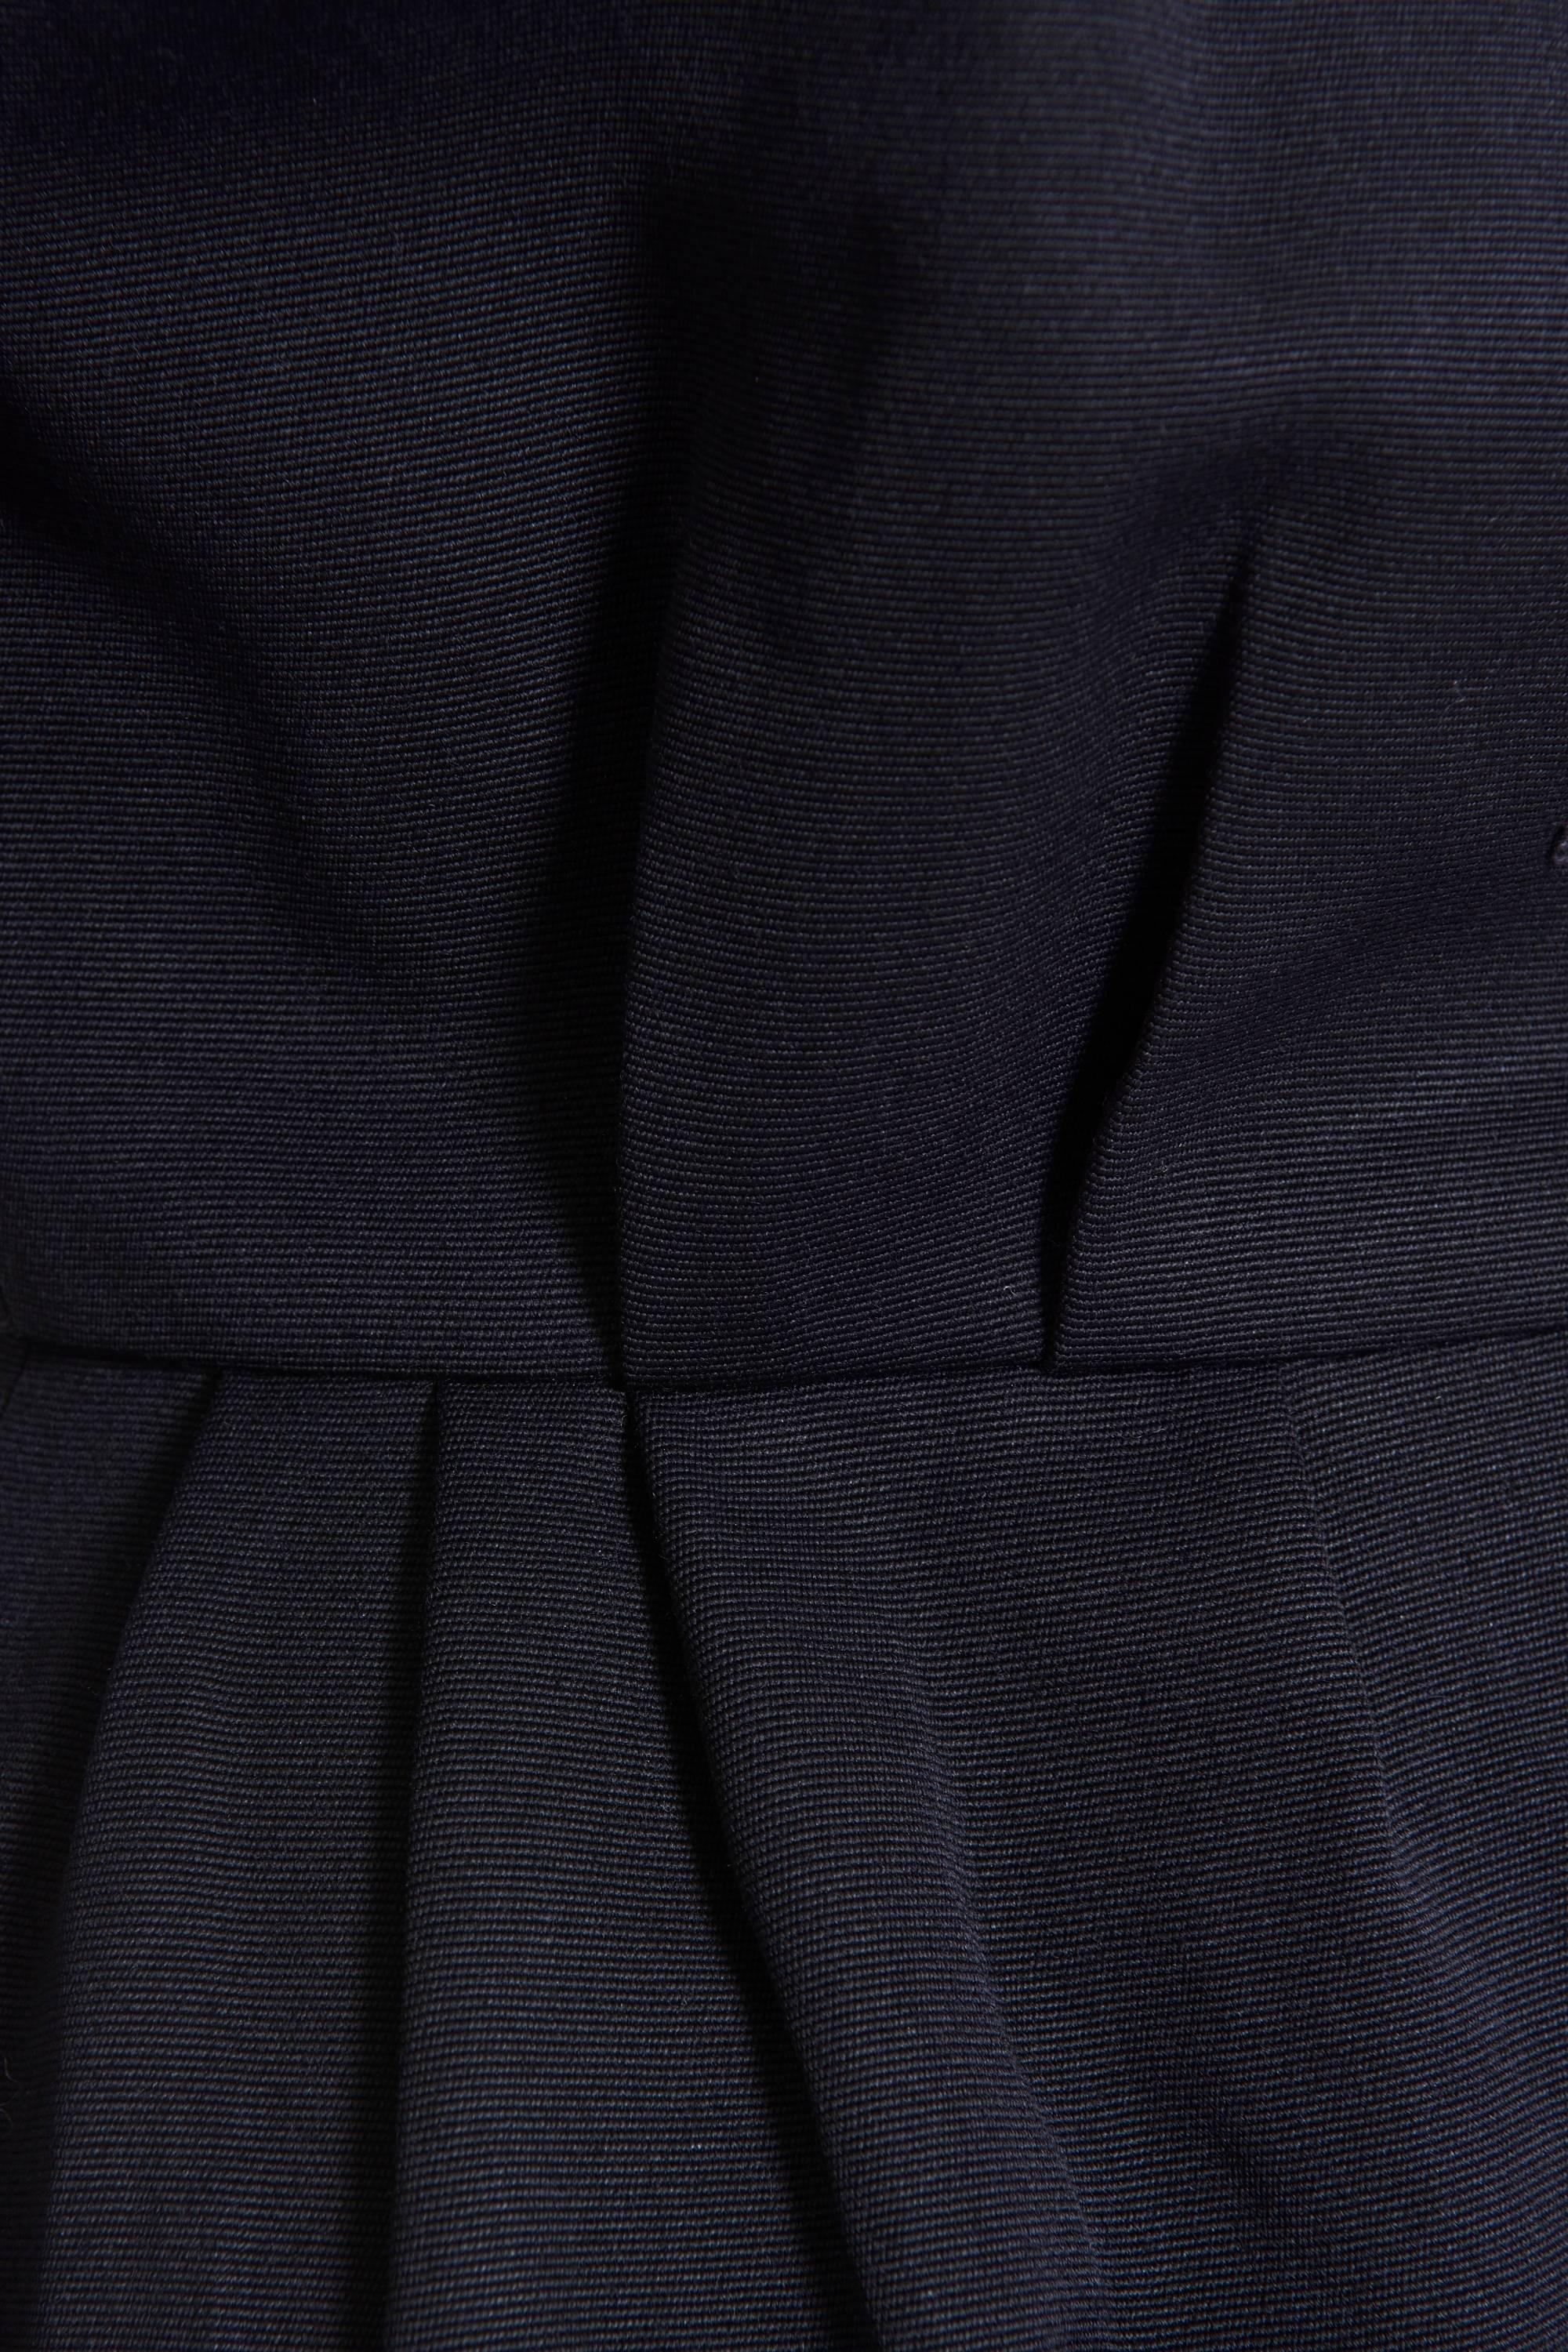 Women's 1980s YVES SAINT LAURENT Rive Gauche Black Cotton Dress